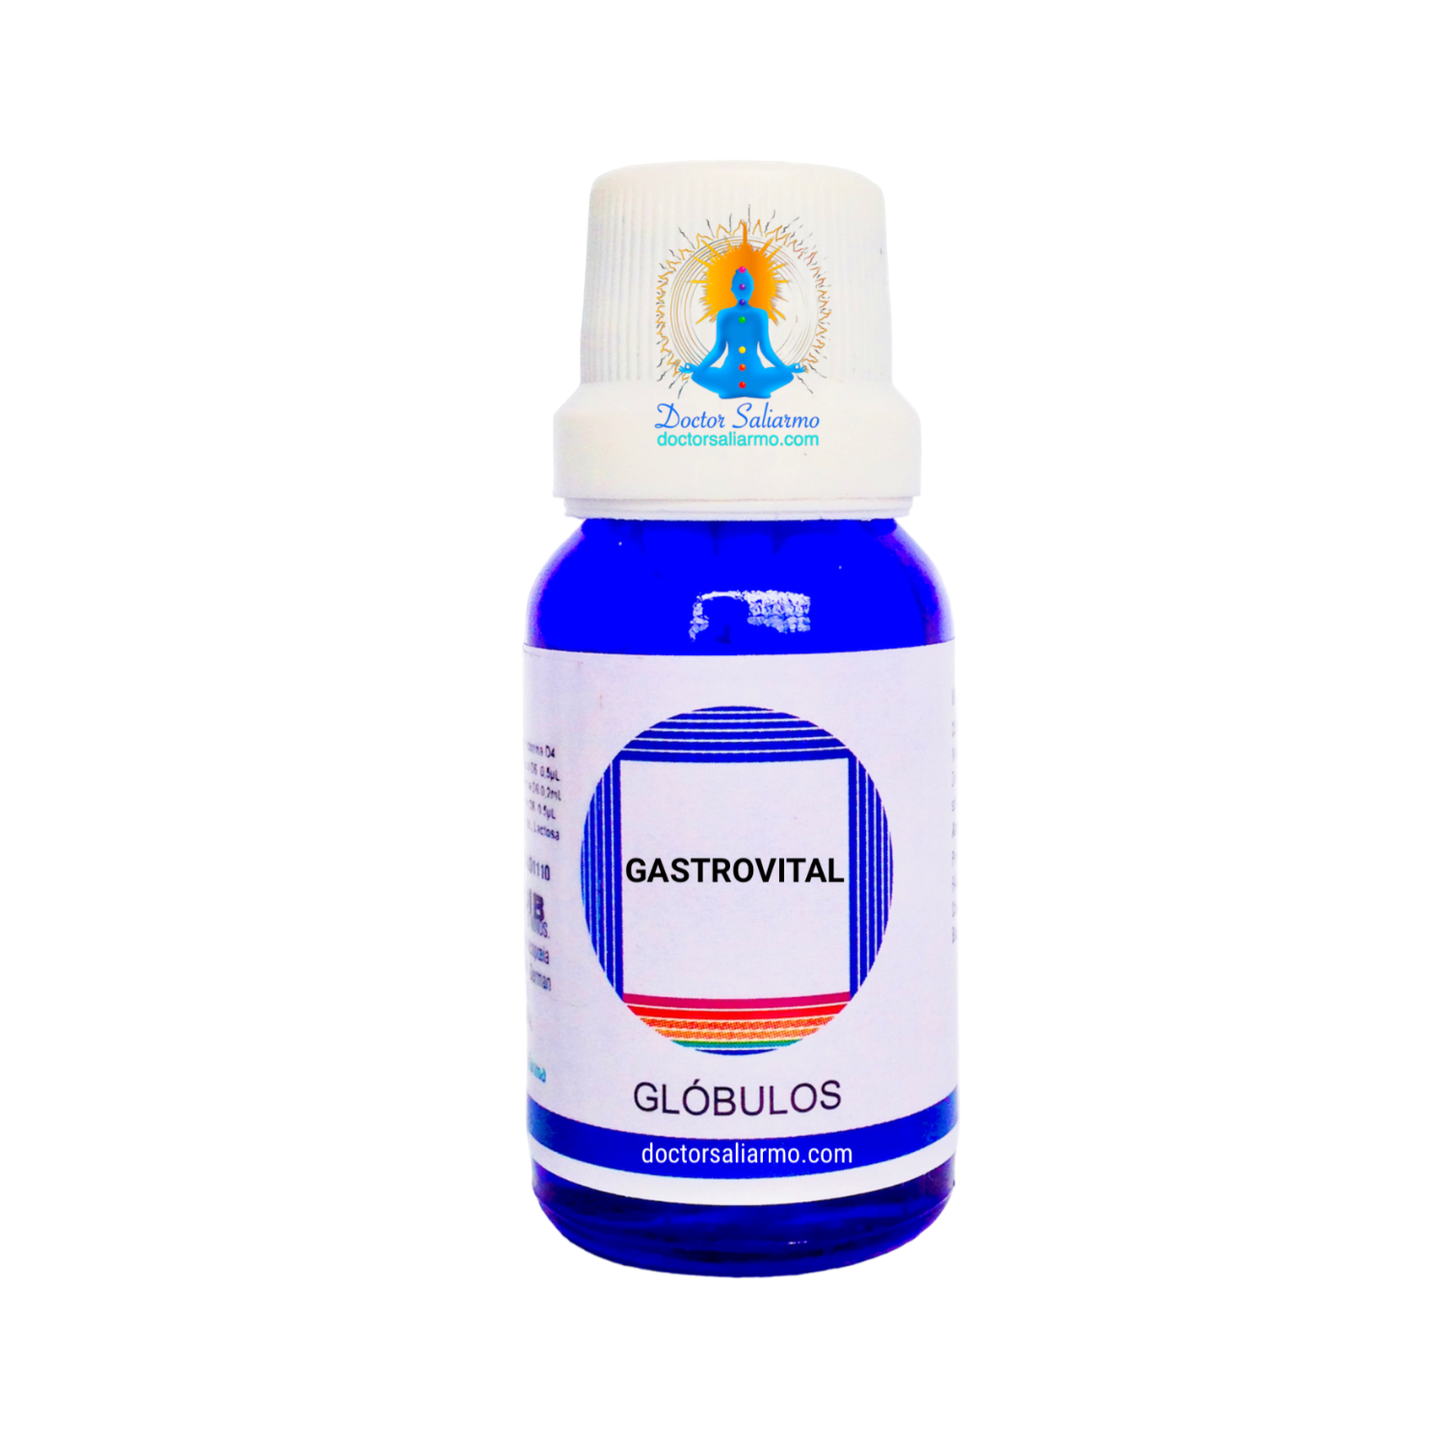 gastrovital esta indicado en gastritis y acidez estomacal.